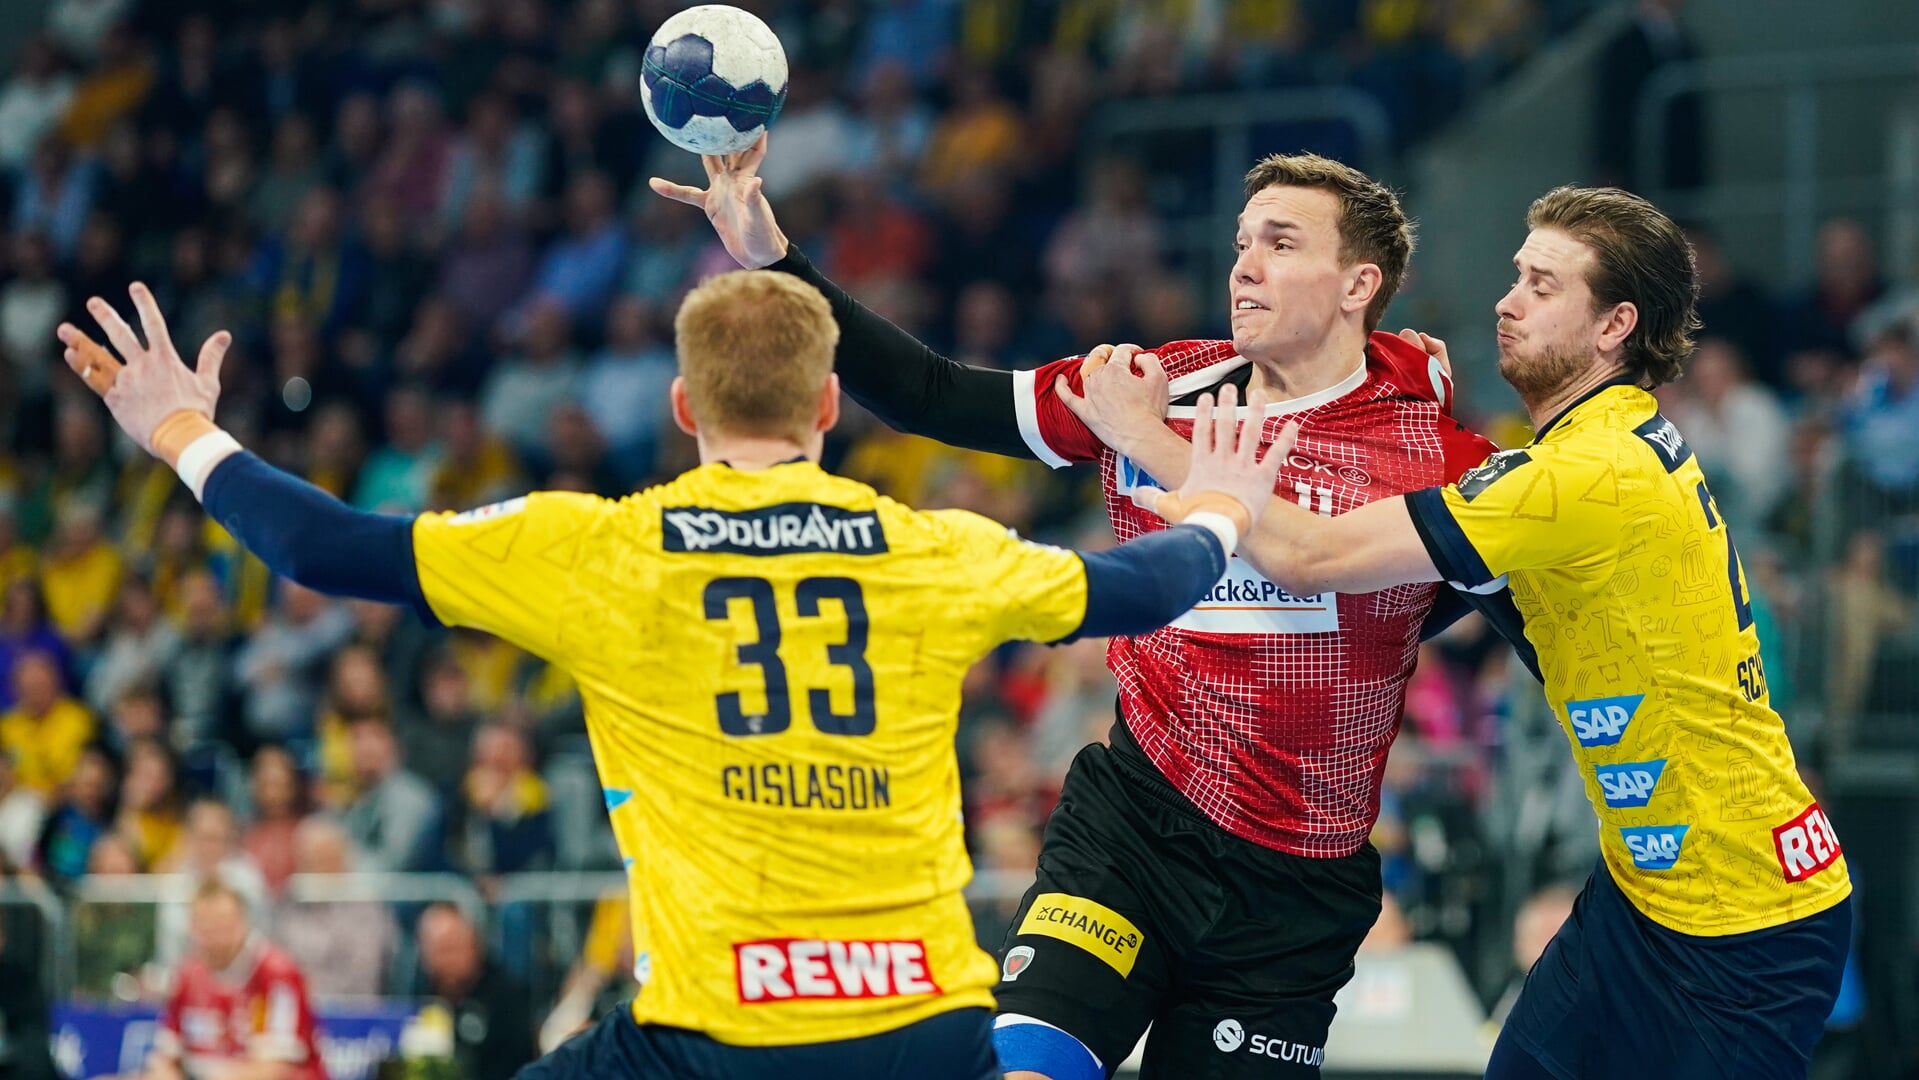 Lasse Andersson (M) gehen als Favorit ins Halbfinale gegen Ymir Ørn Gislason (l), Olle Forsell Schefvert und die Rhein-Neckar Löwen.